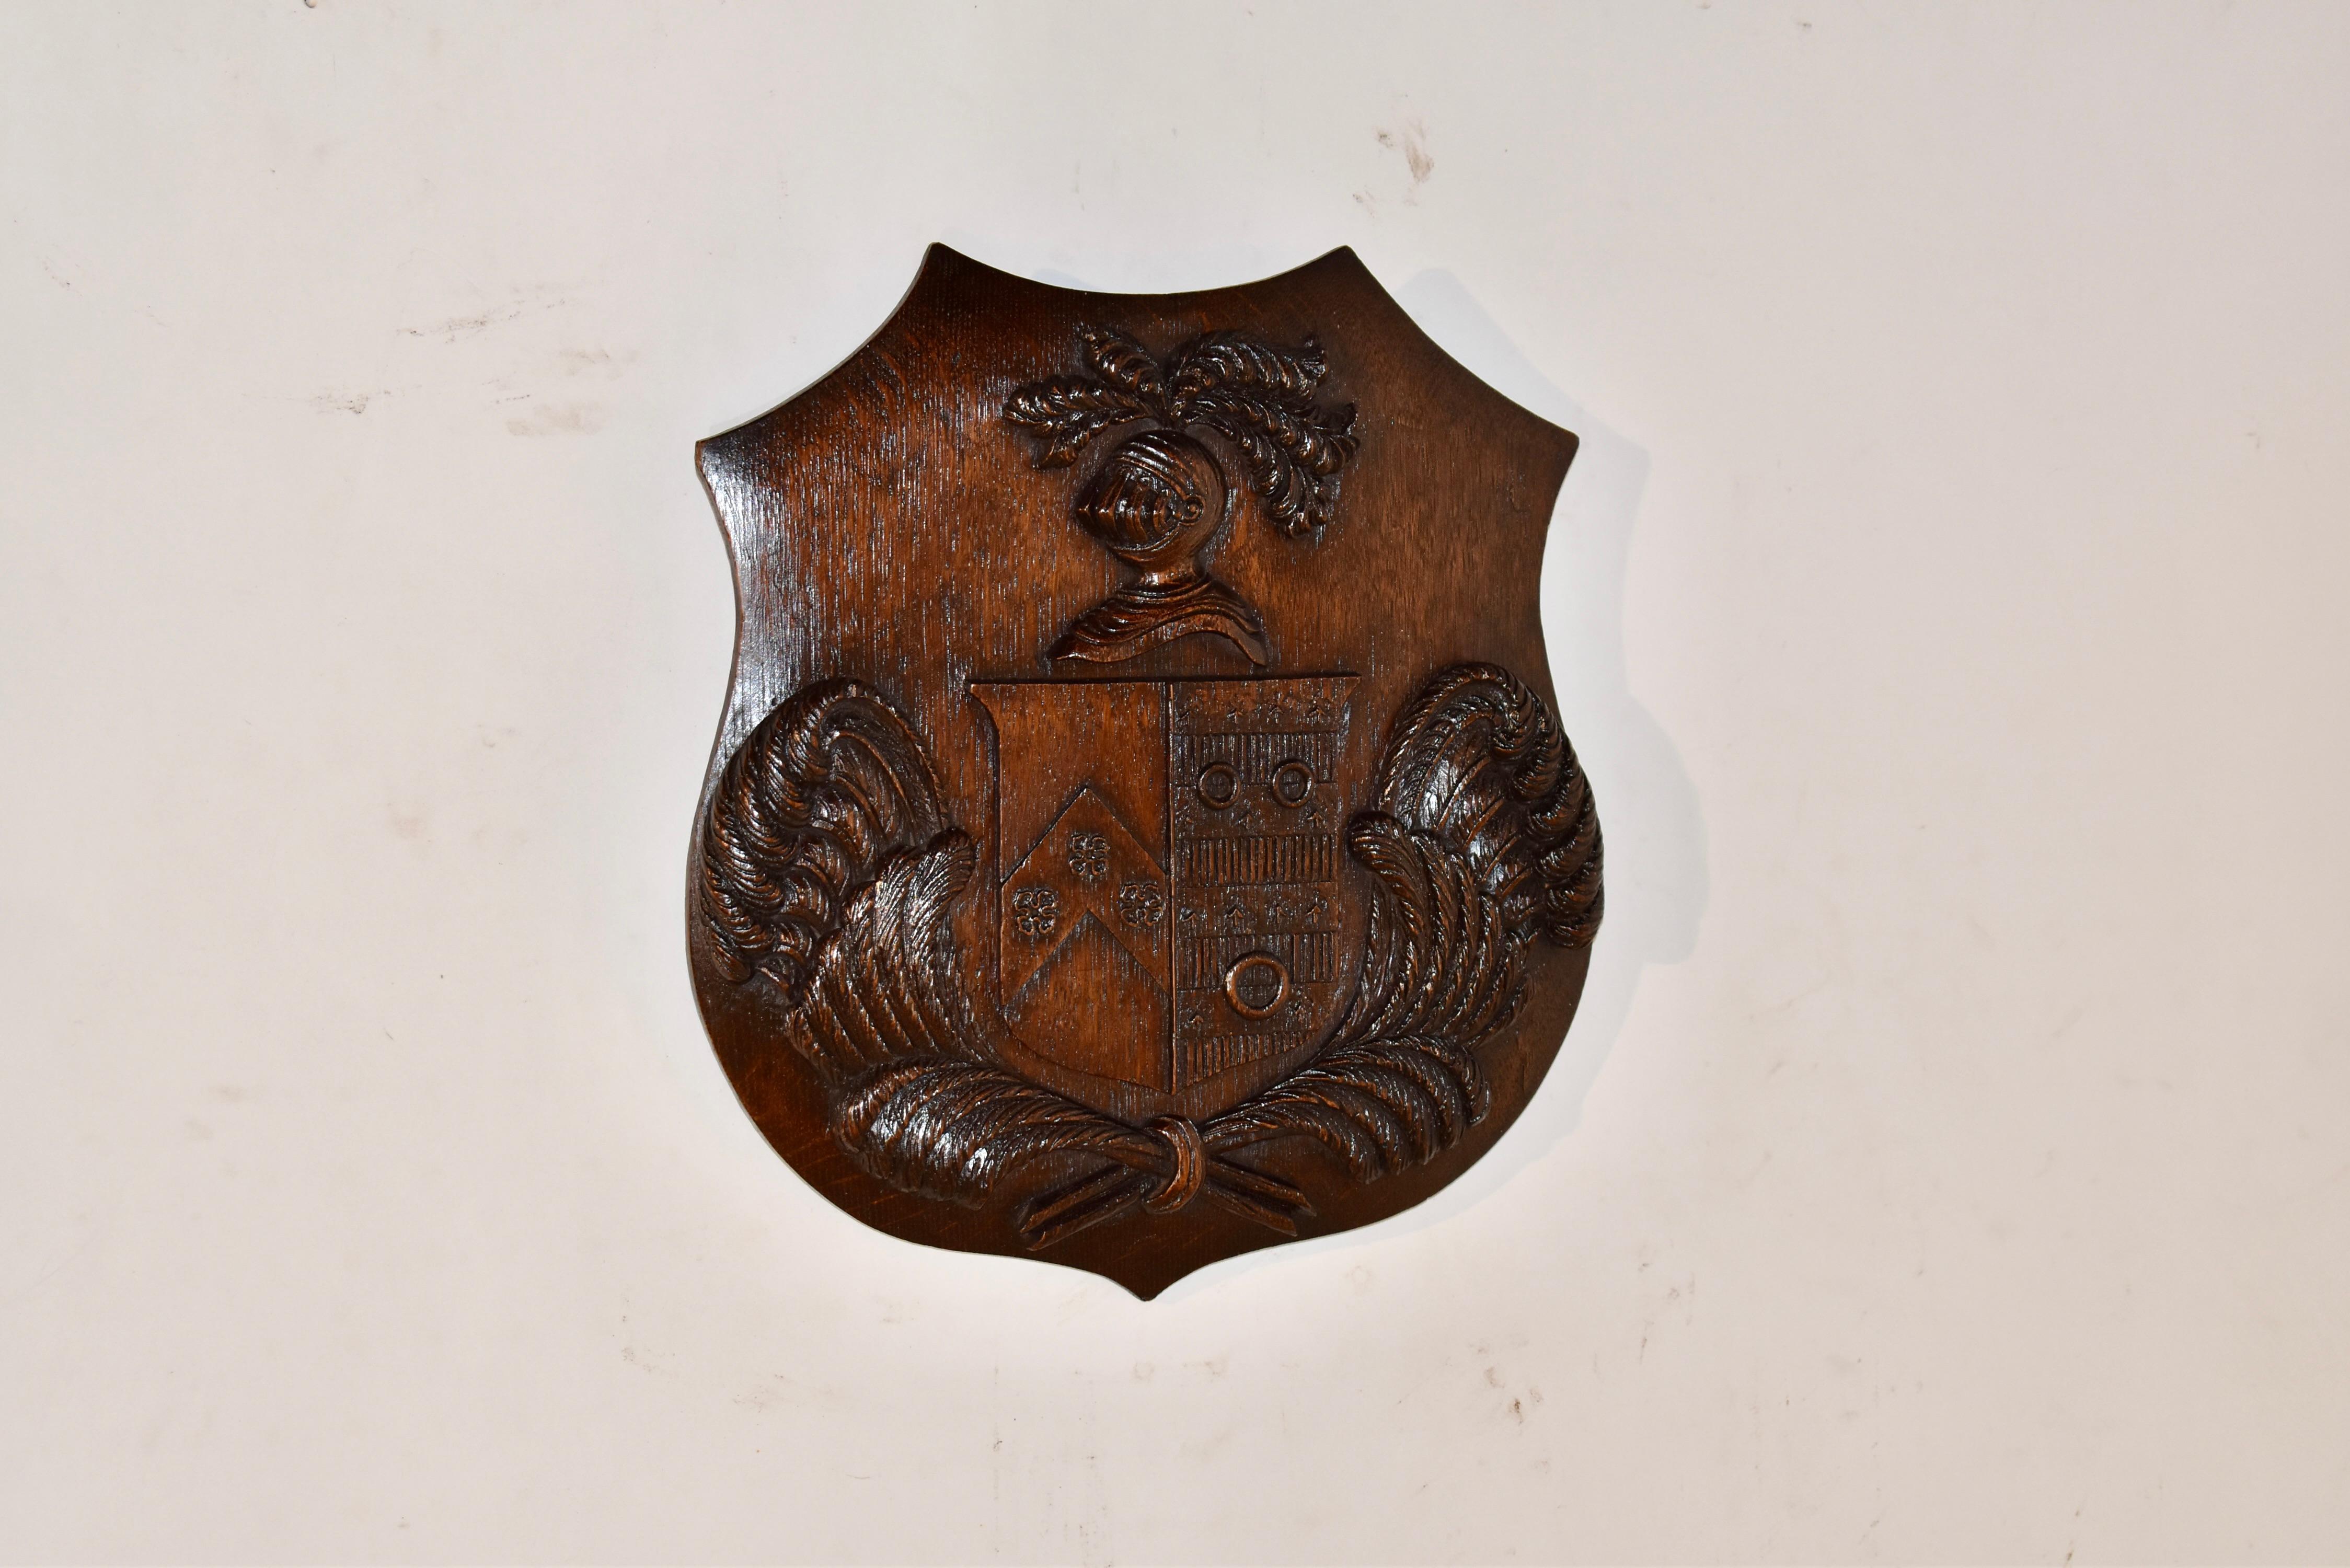 Handgeschnitztes Wappen aus dem 19. Jahrhundert.  Die Plakette hat die Form eines Schildes, auf dem ein Ritterkopf mit Federbüscheln in seiner Rüstung über einem geschnitzten Schild abgebildet ist.  Das Schild befindet sich über wunderschön